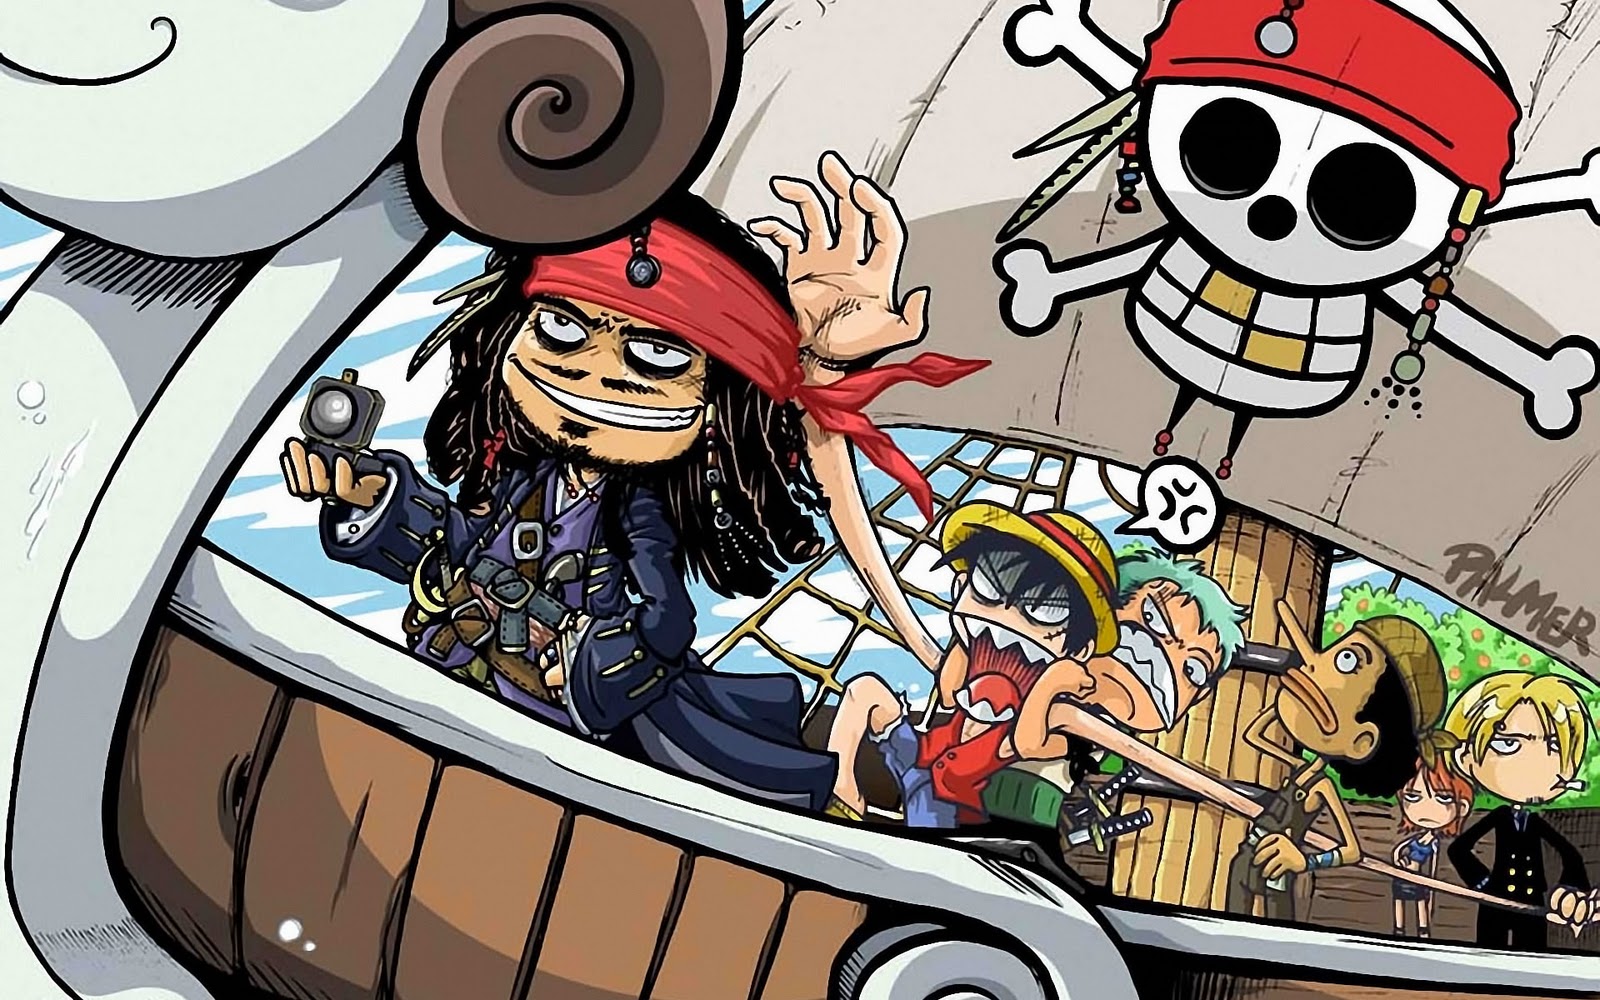 Galeria de imagenes Piratas+del+caribe+4+anime+poster